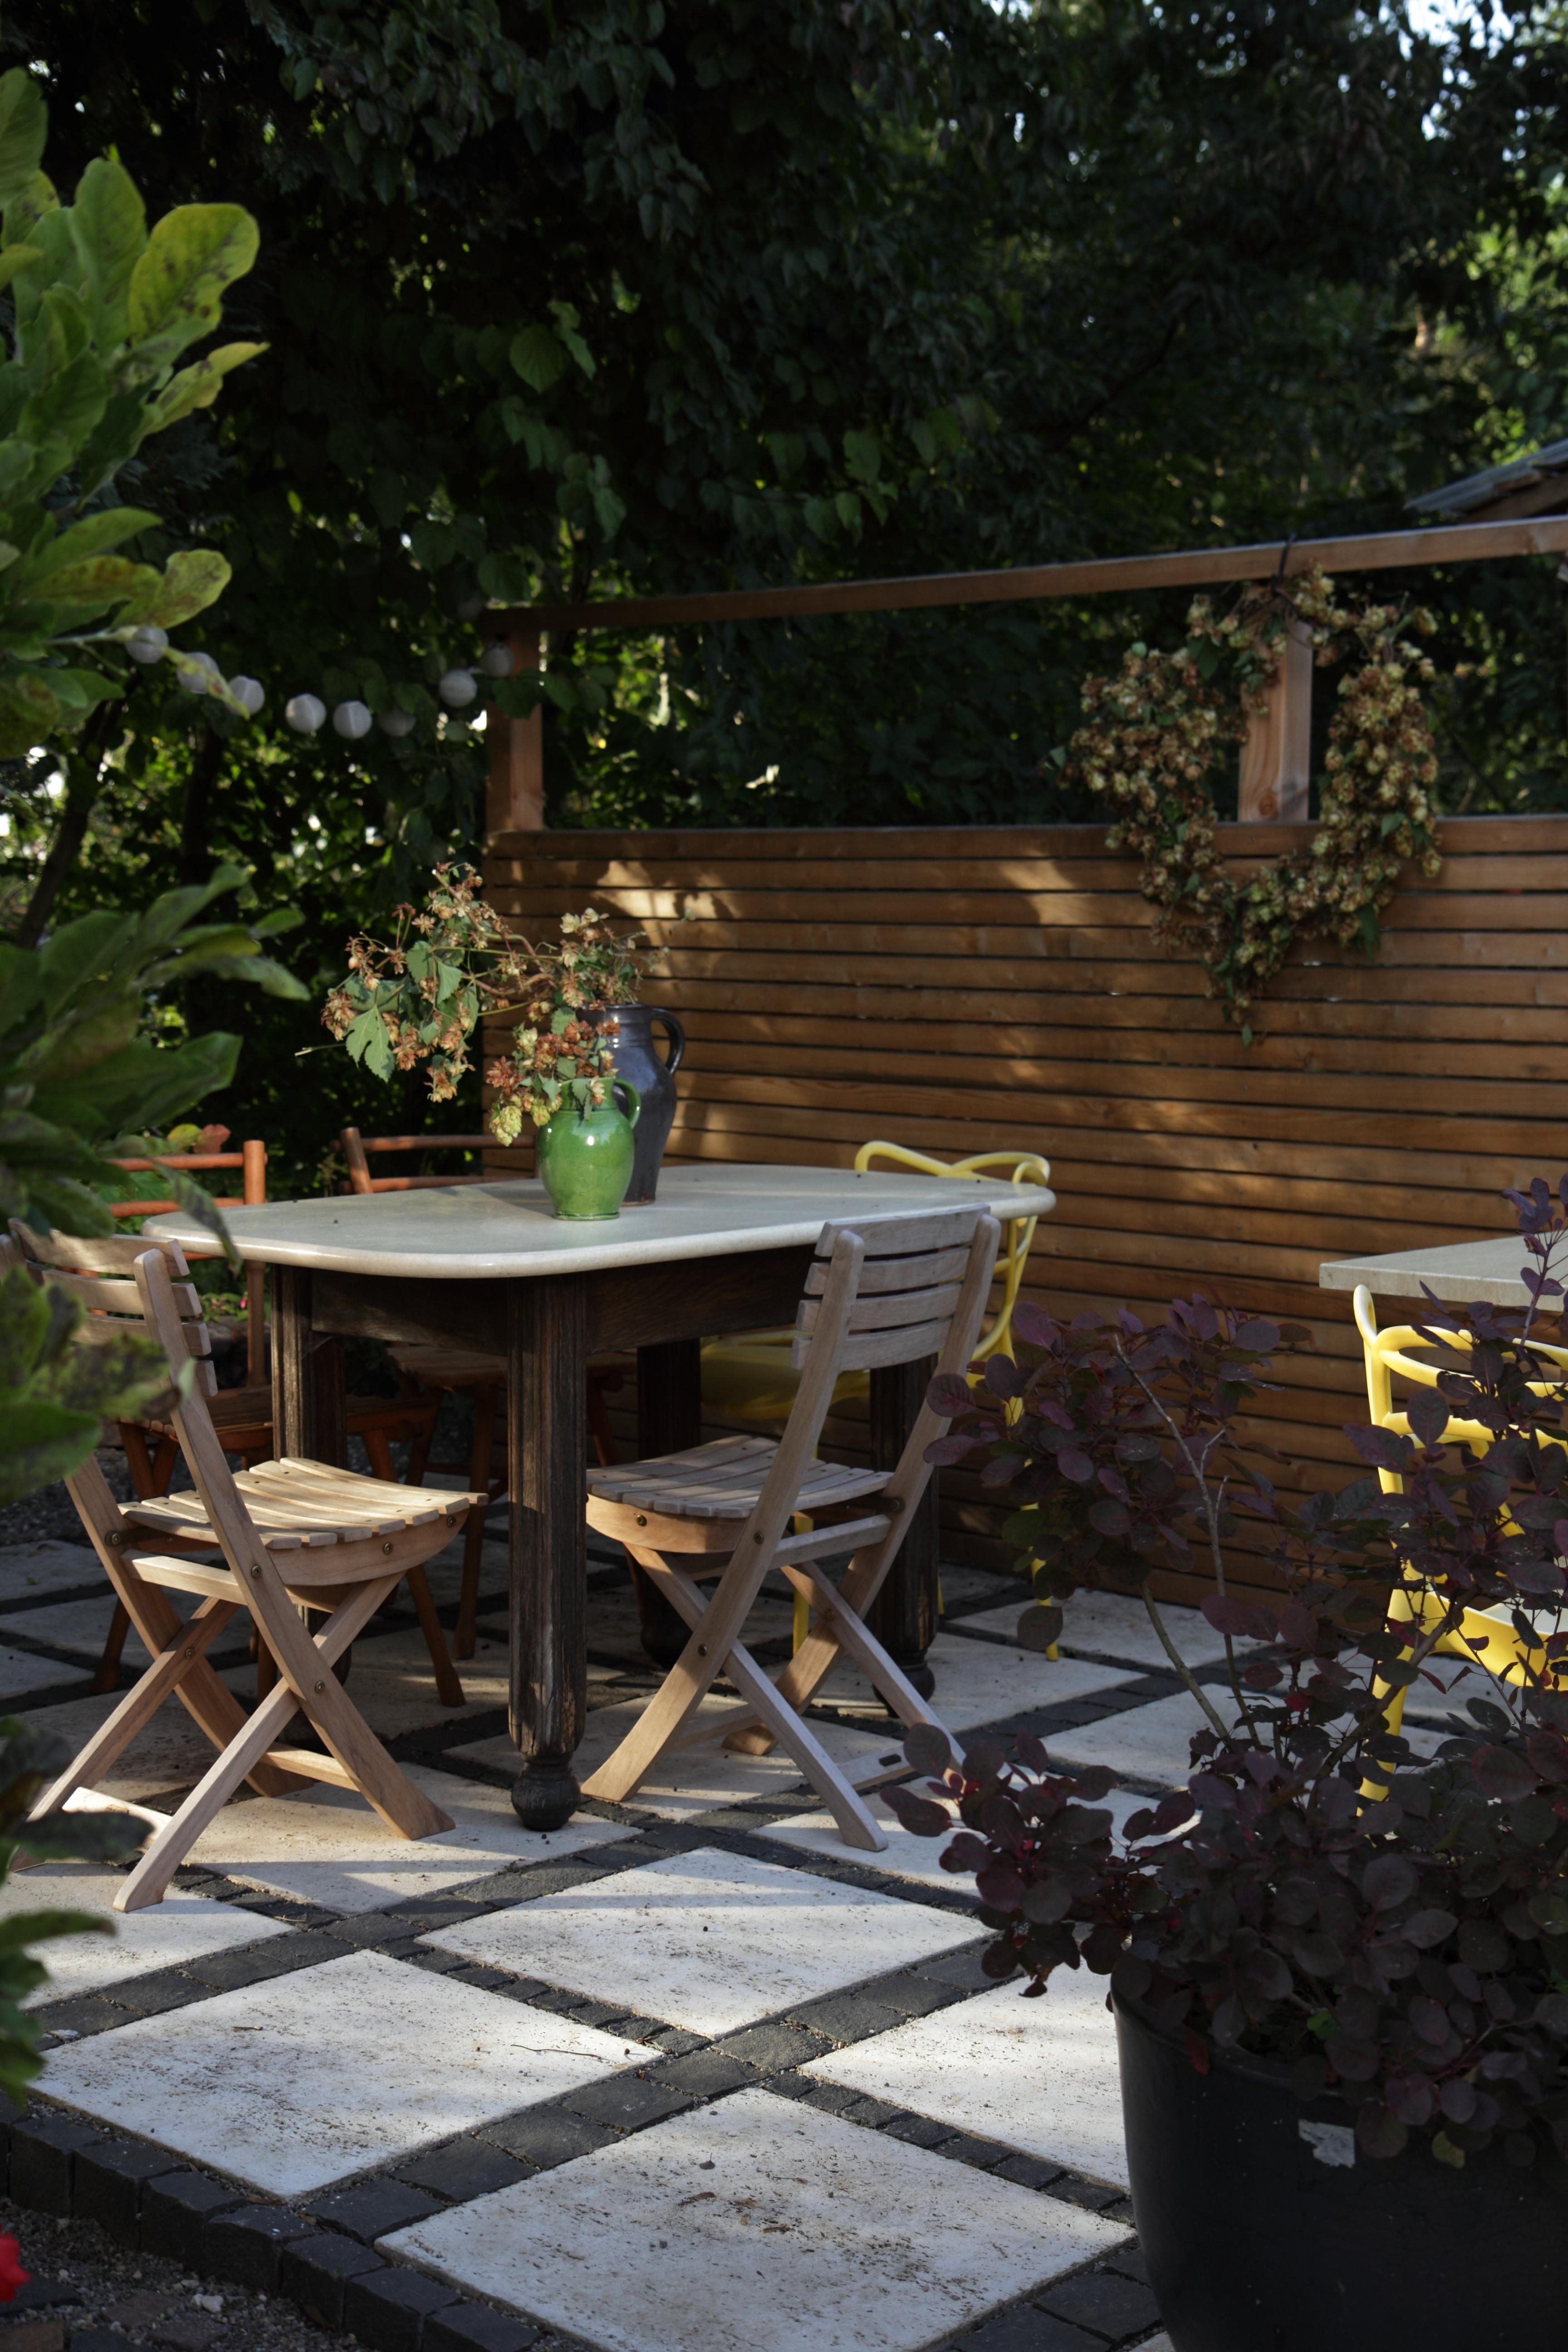 #Garten #Sitzplatz #Terrasse #herbst
Das letzte Mal draußen sitzen, bevor es ungemütlich wird.